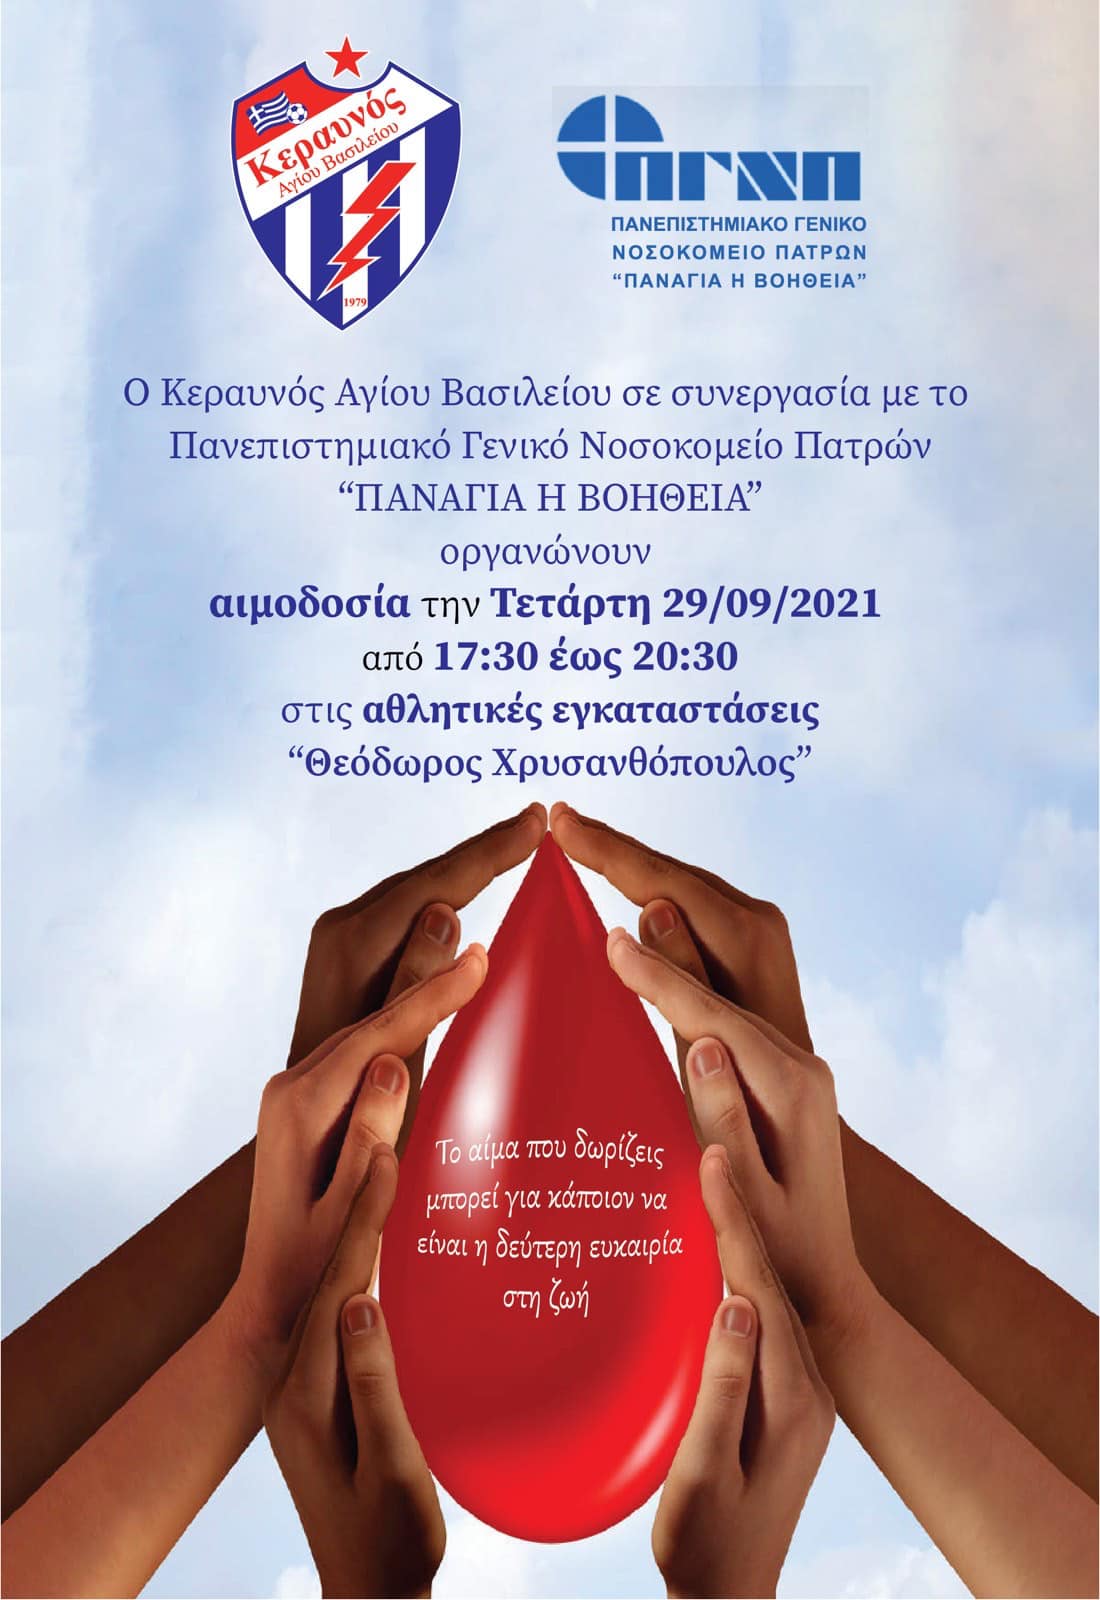 Κεραυνός Αγίου Βασιλείου: Αιμοδοσία την Τετάρτη (29/9) στο "Θ. Χρυσανθόπουλος"